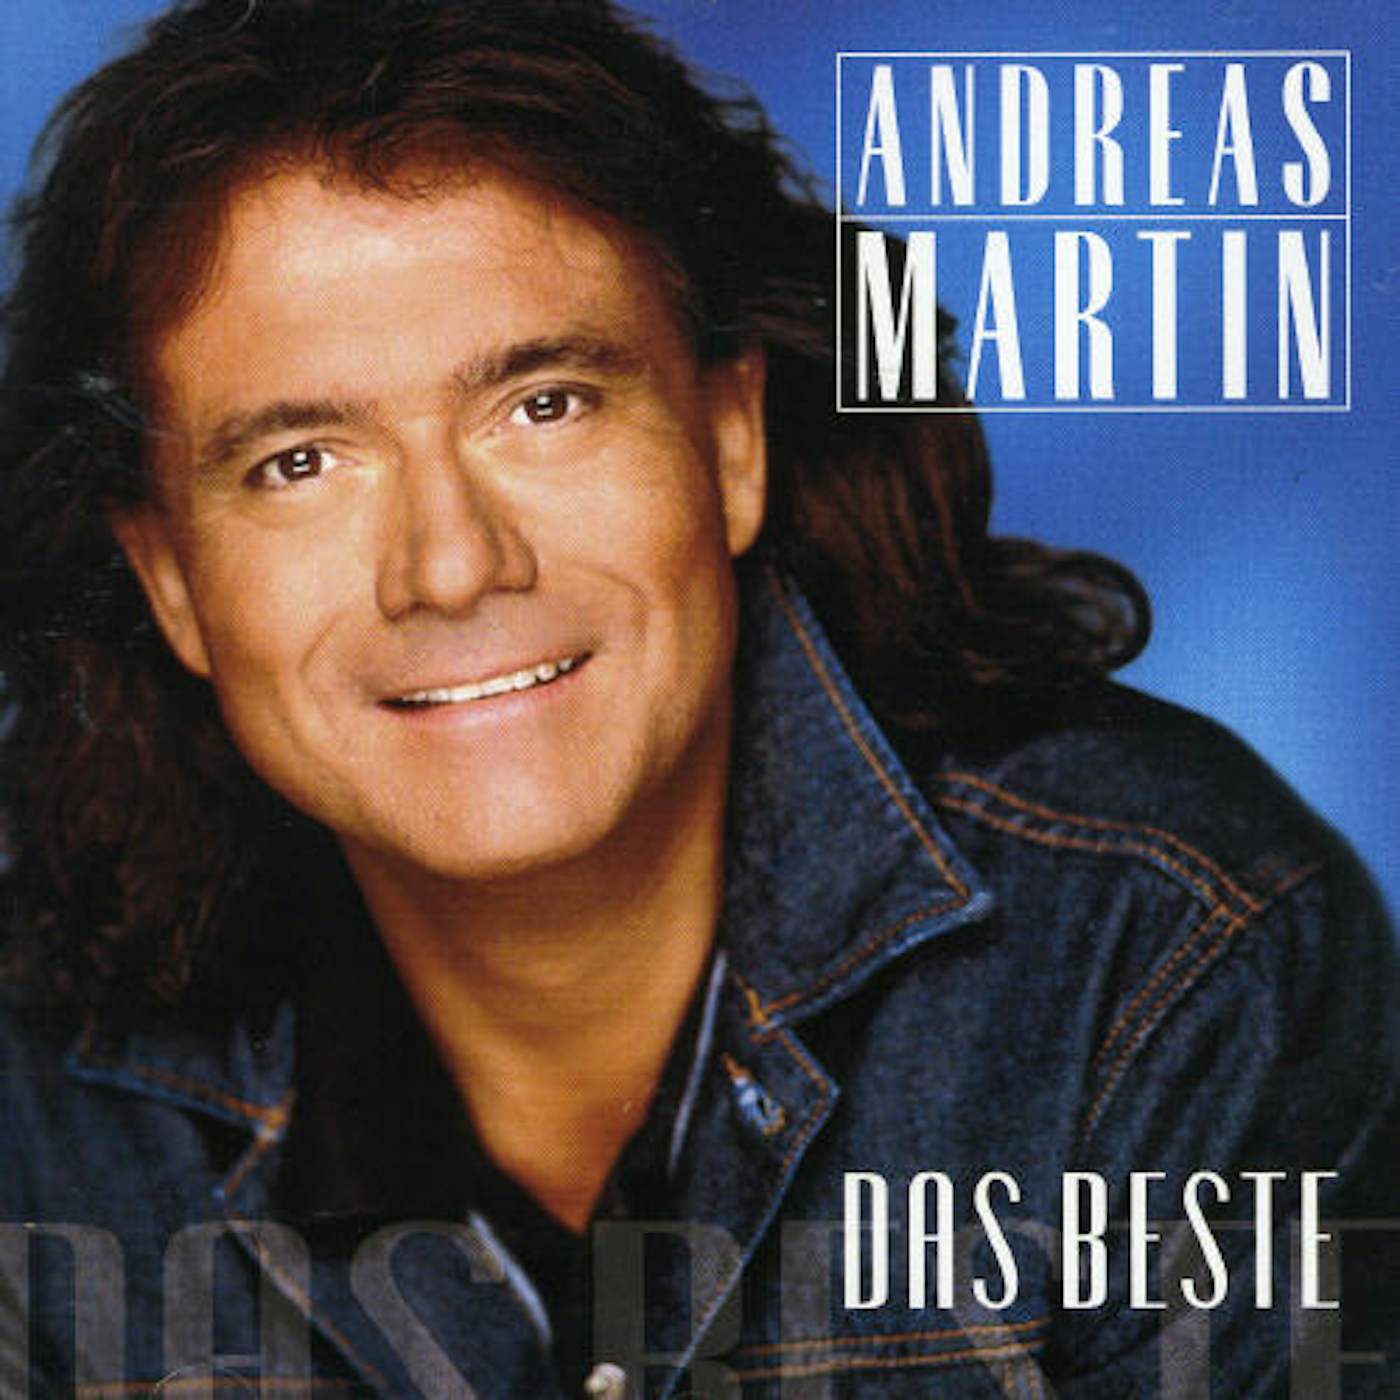 Andreas Martin DAS BESTE CD